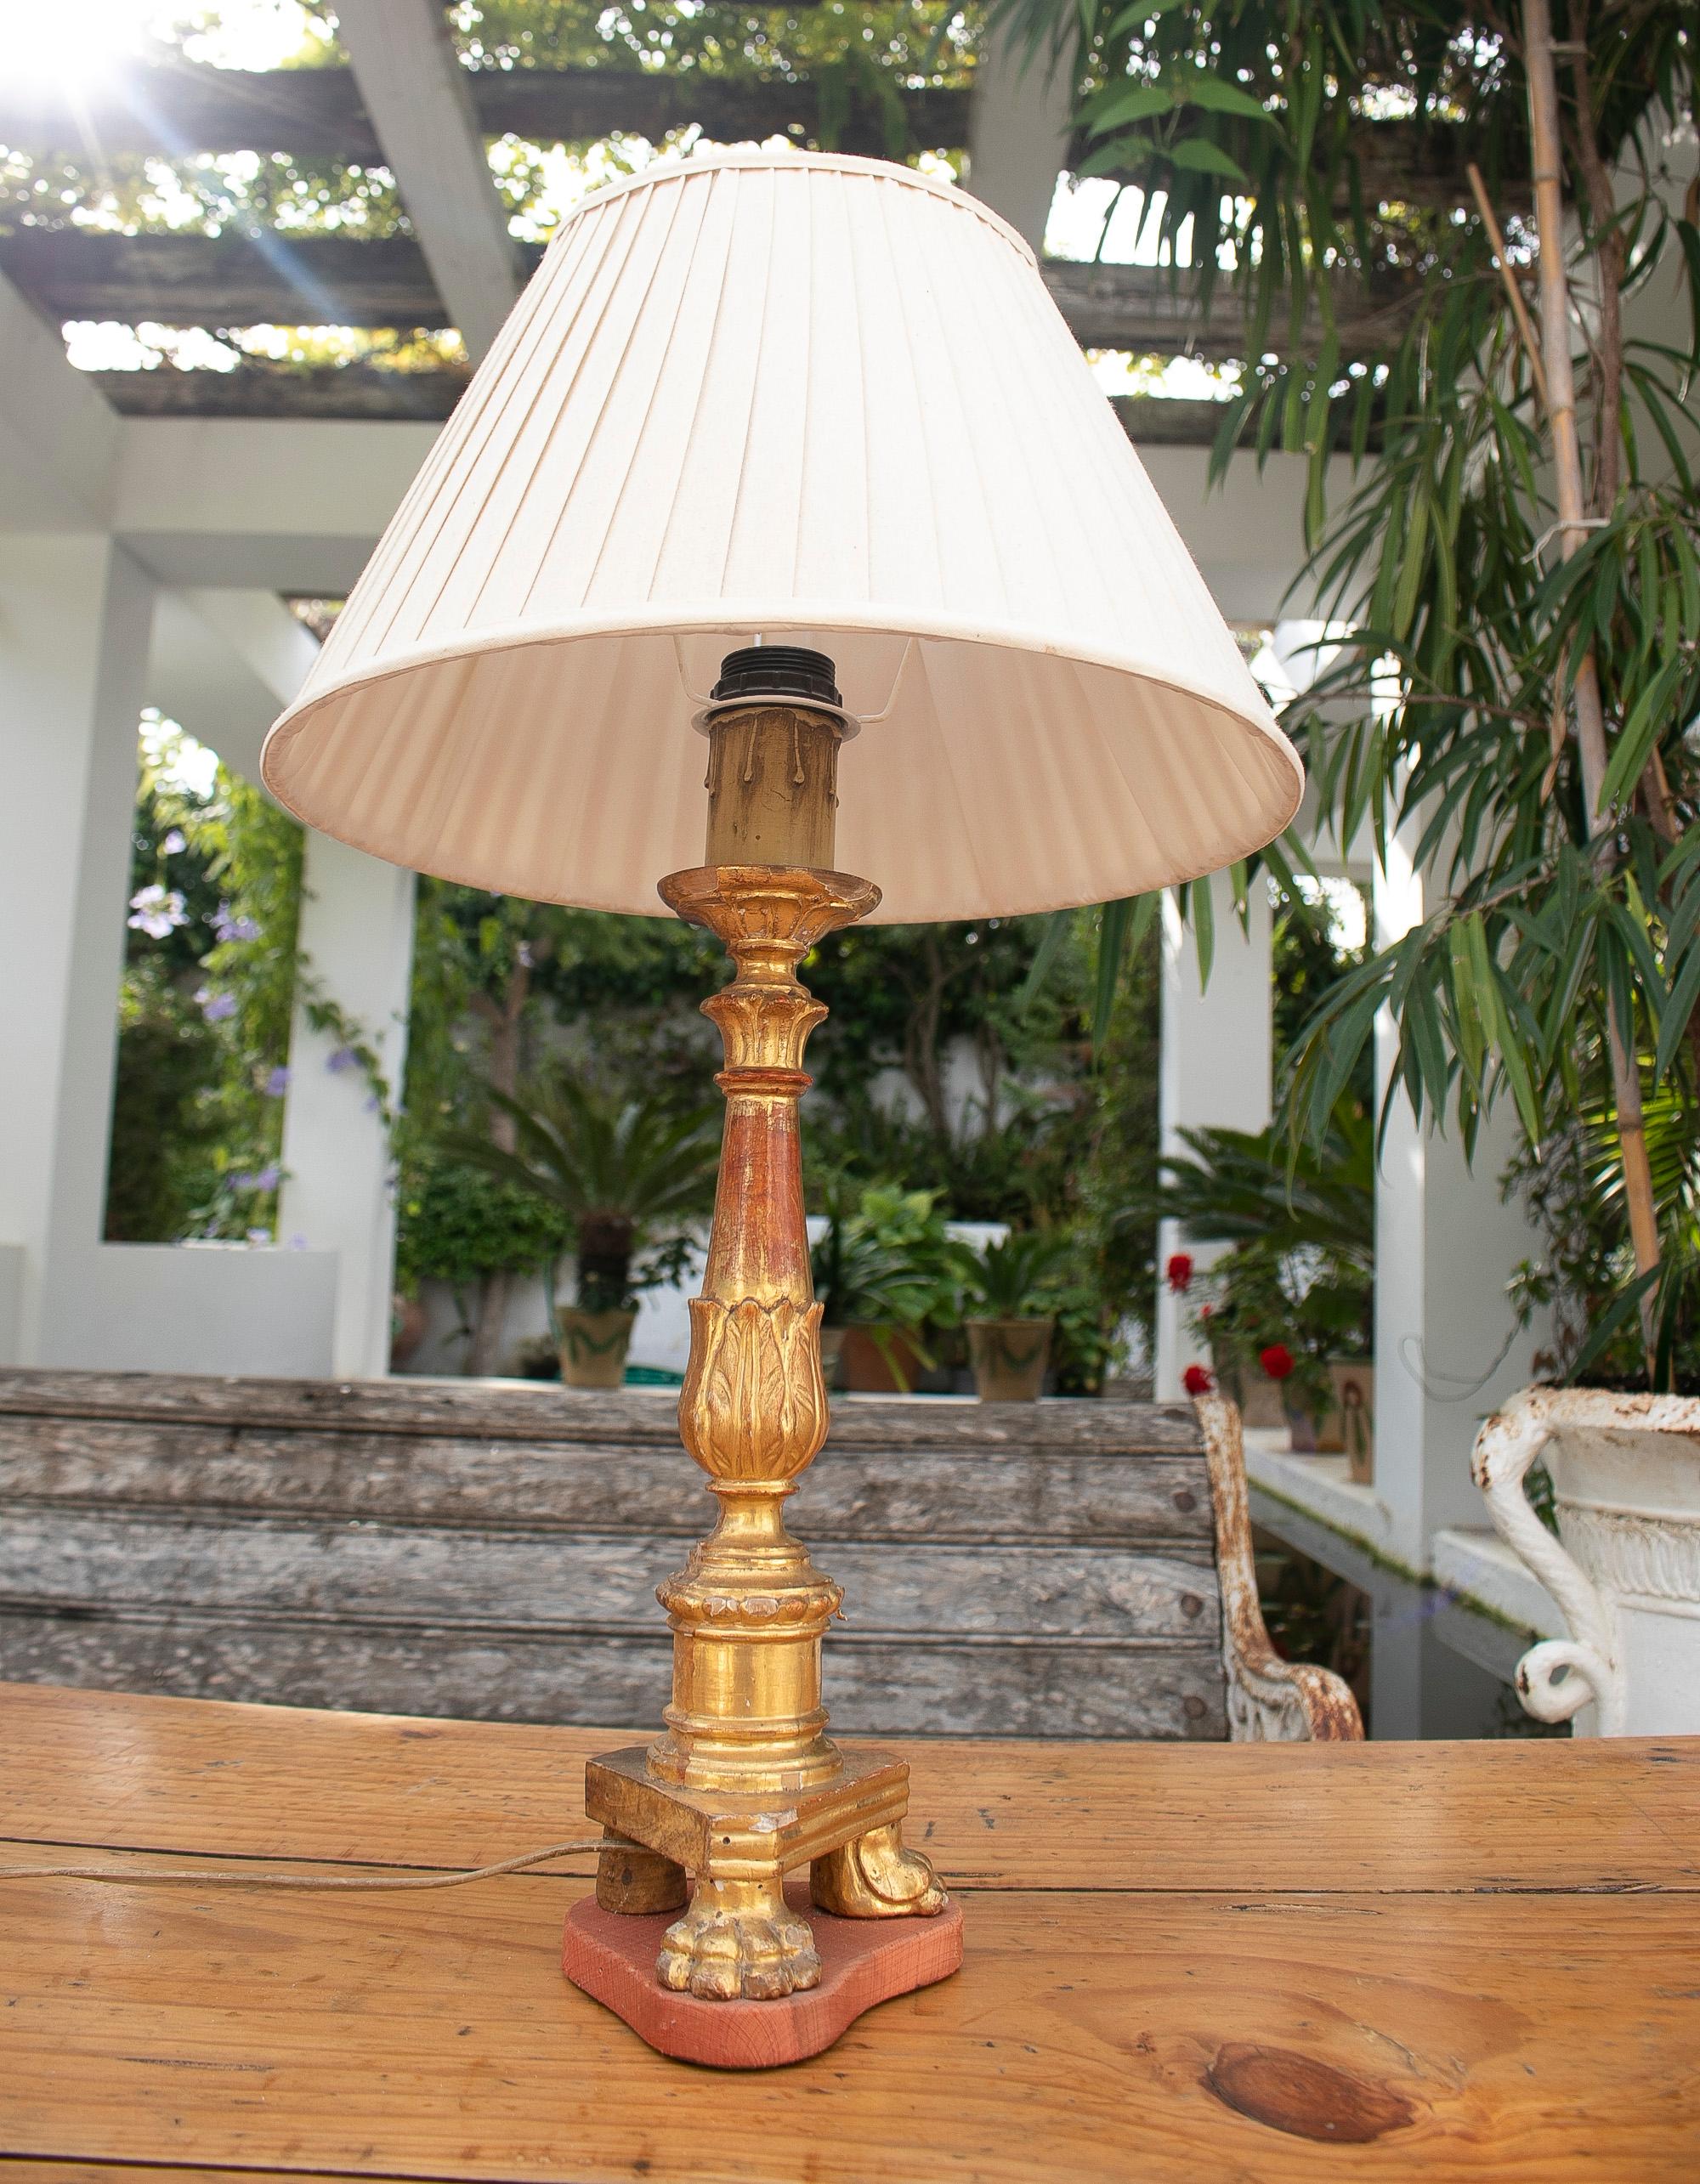 lampe de table espagnole du 18e siècle avec porte-chandelle doré et pieds griffes

Abat-jour non compris dans le prix.